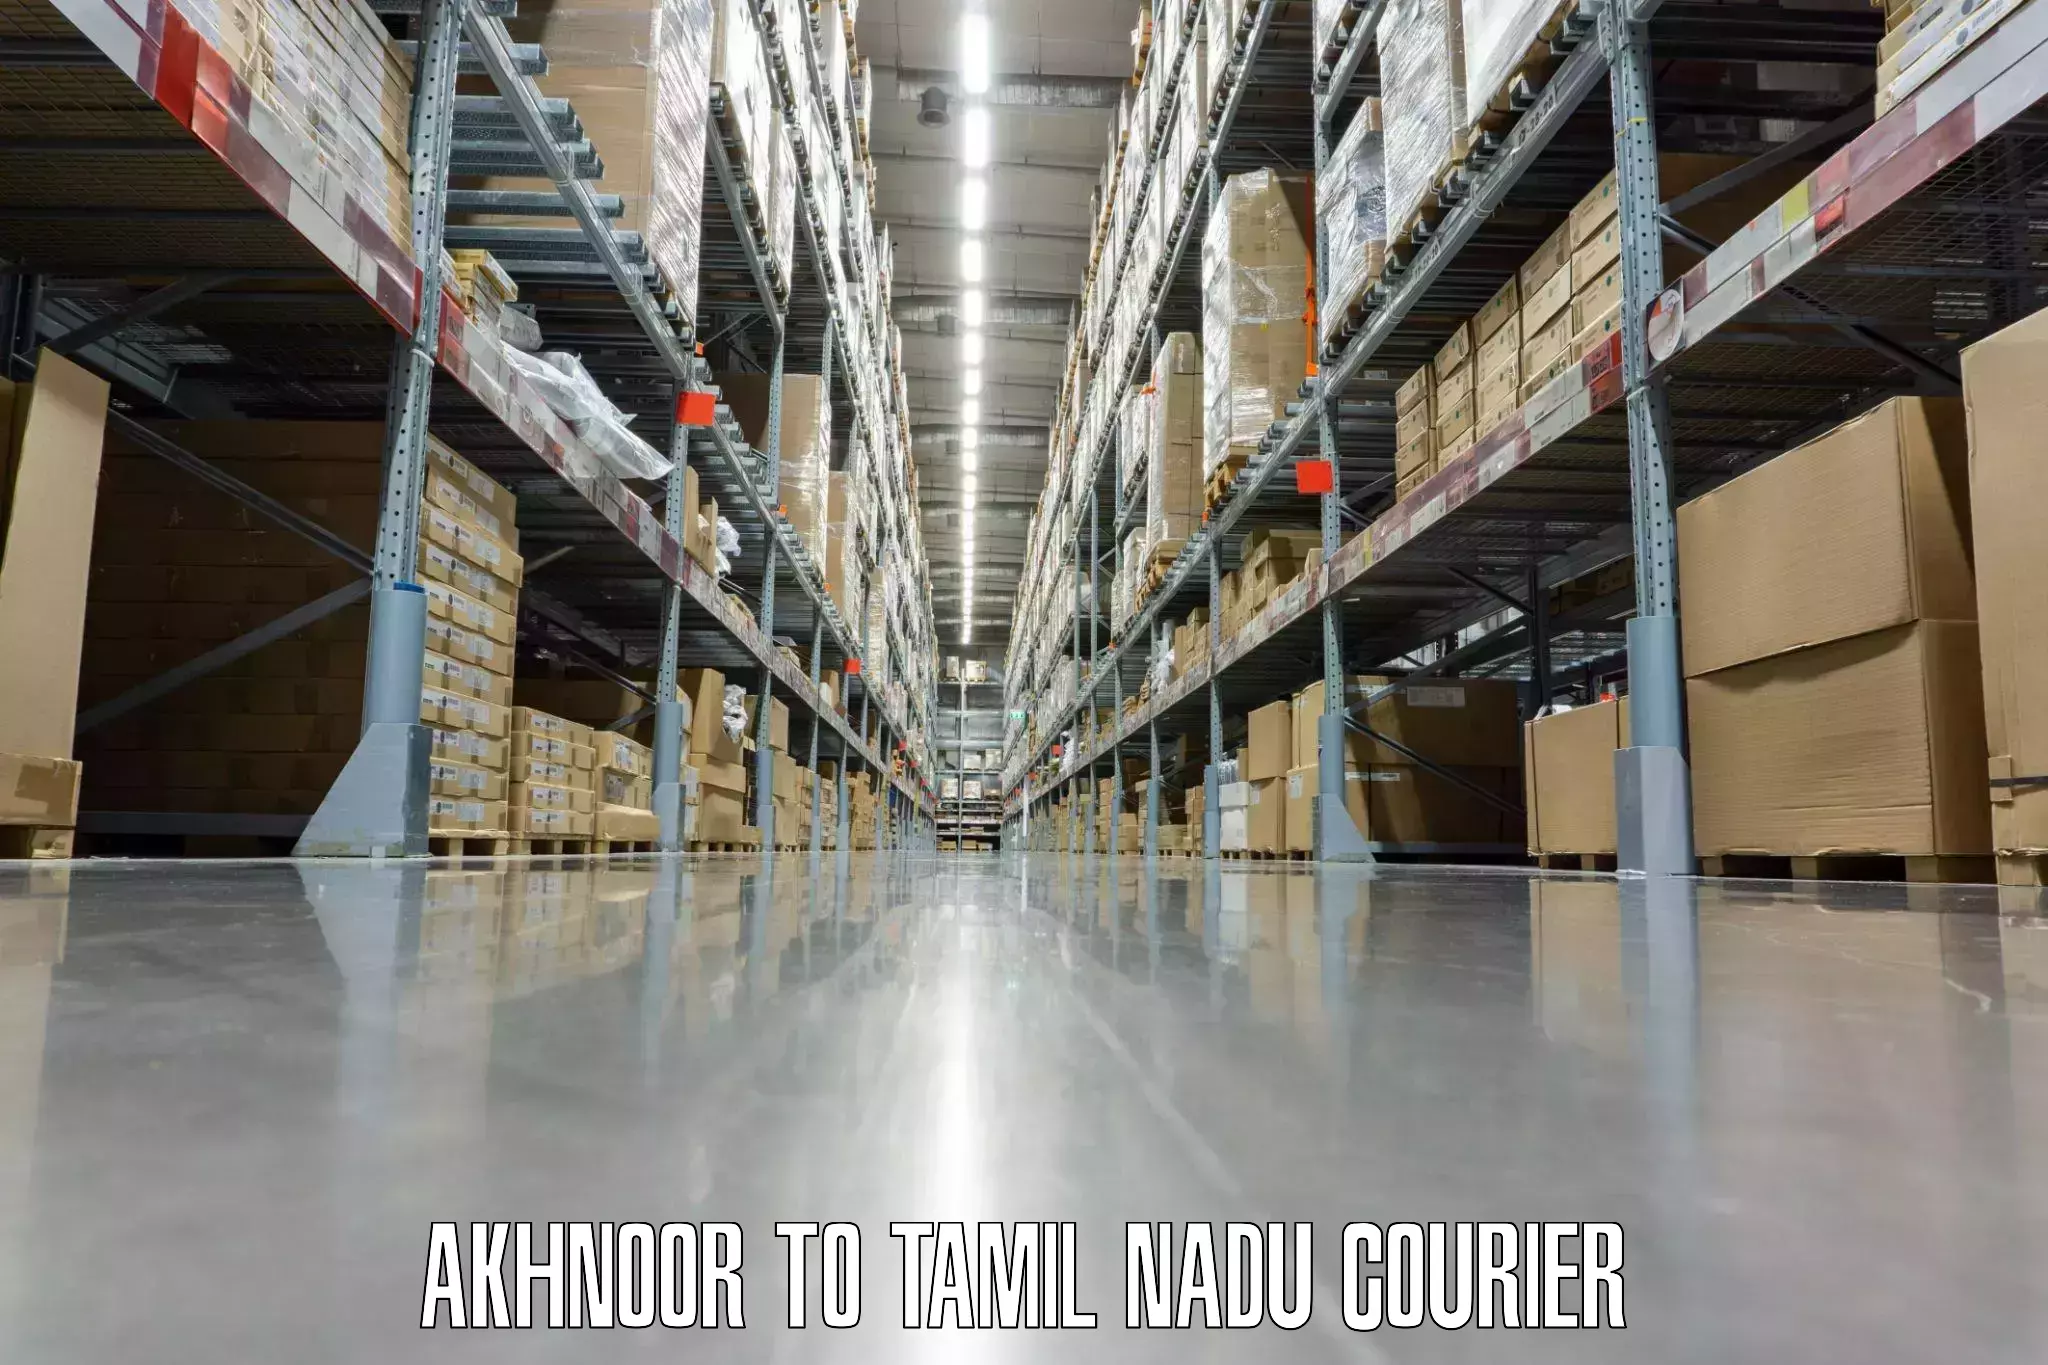 Luggage shipping efficiency Akhnoor to Tamil Nadu